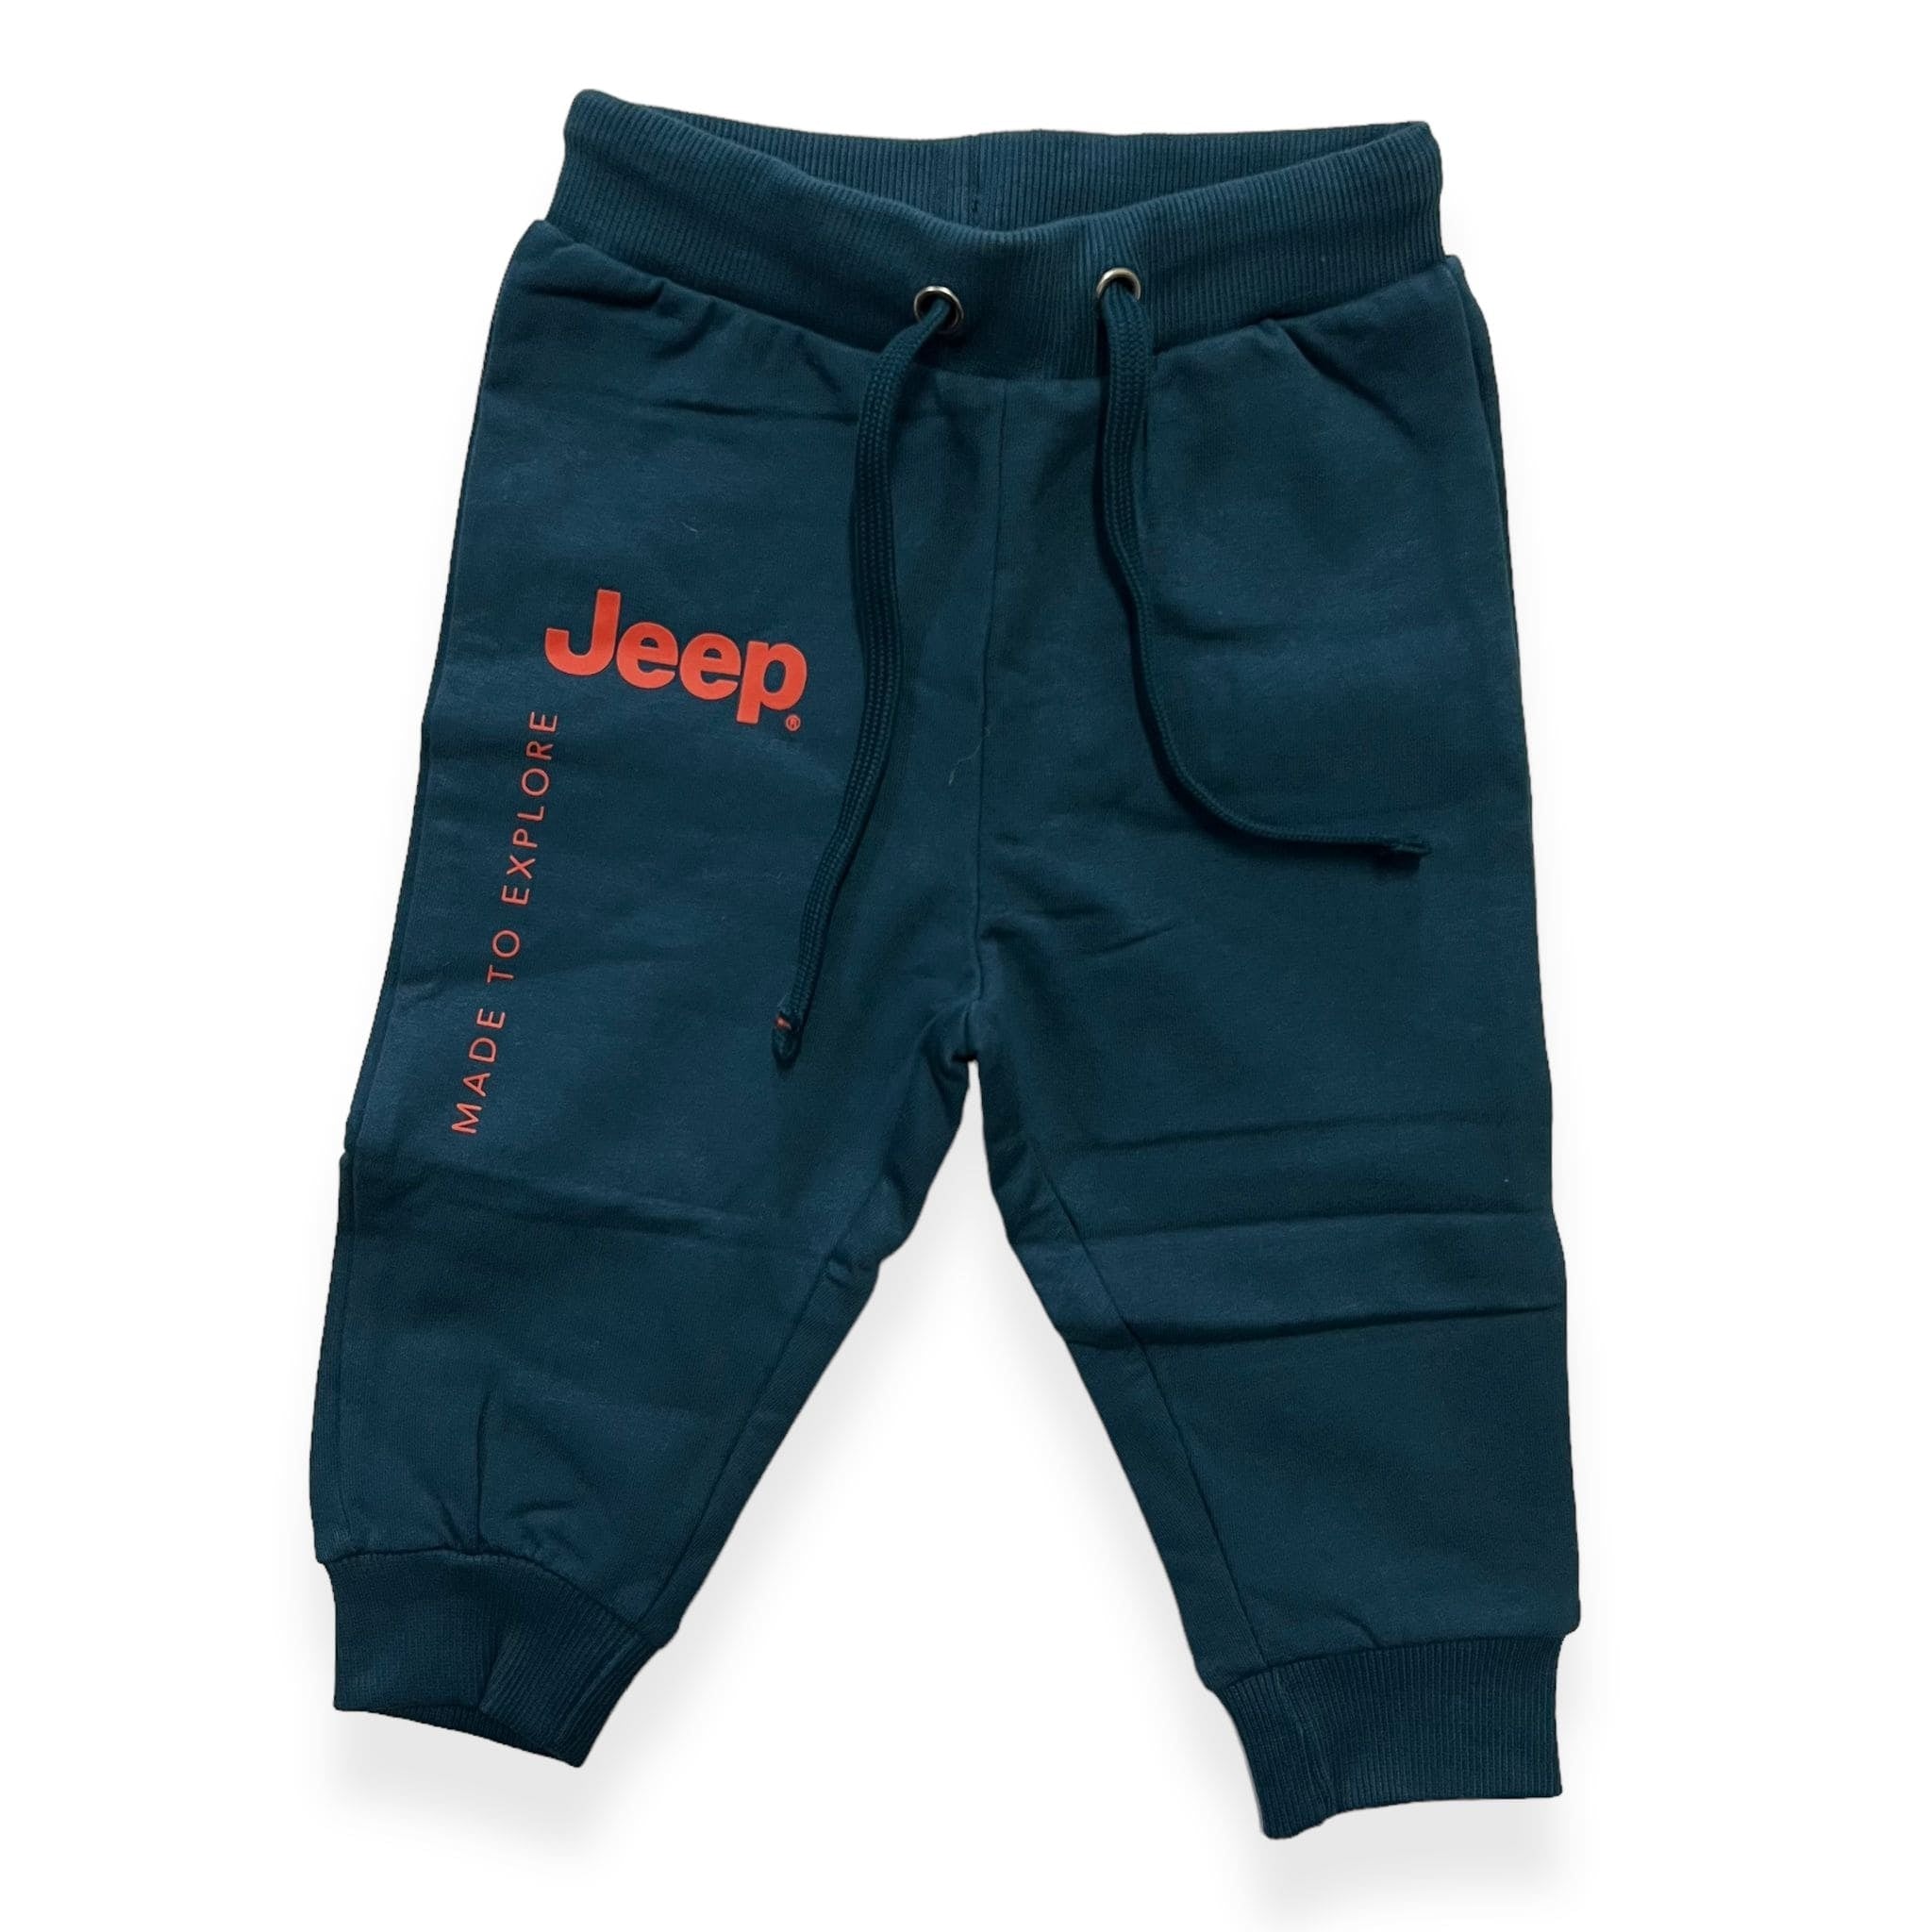 Pantalone Tuta Invernale Jeep® Neonato - Mstore016